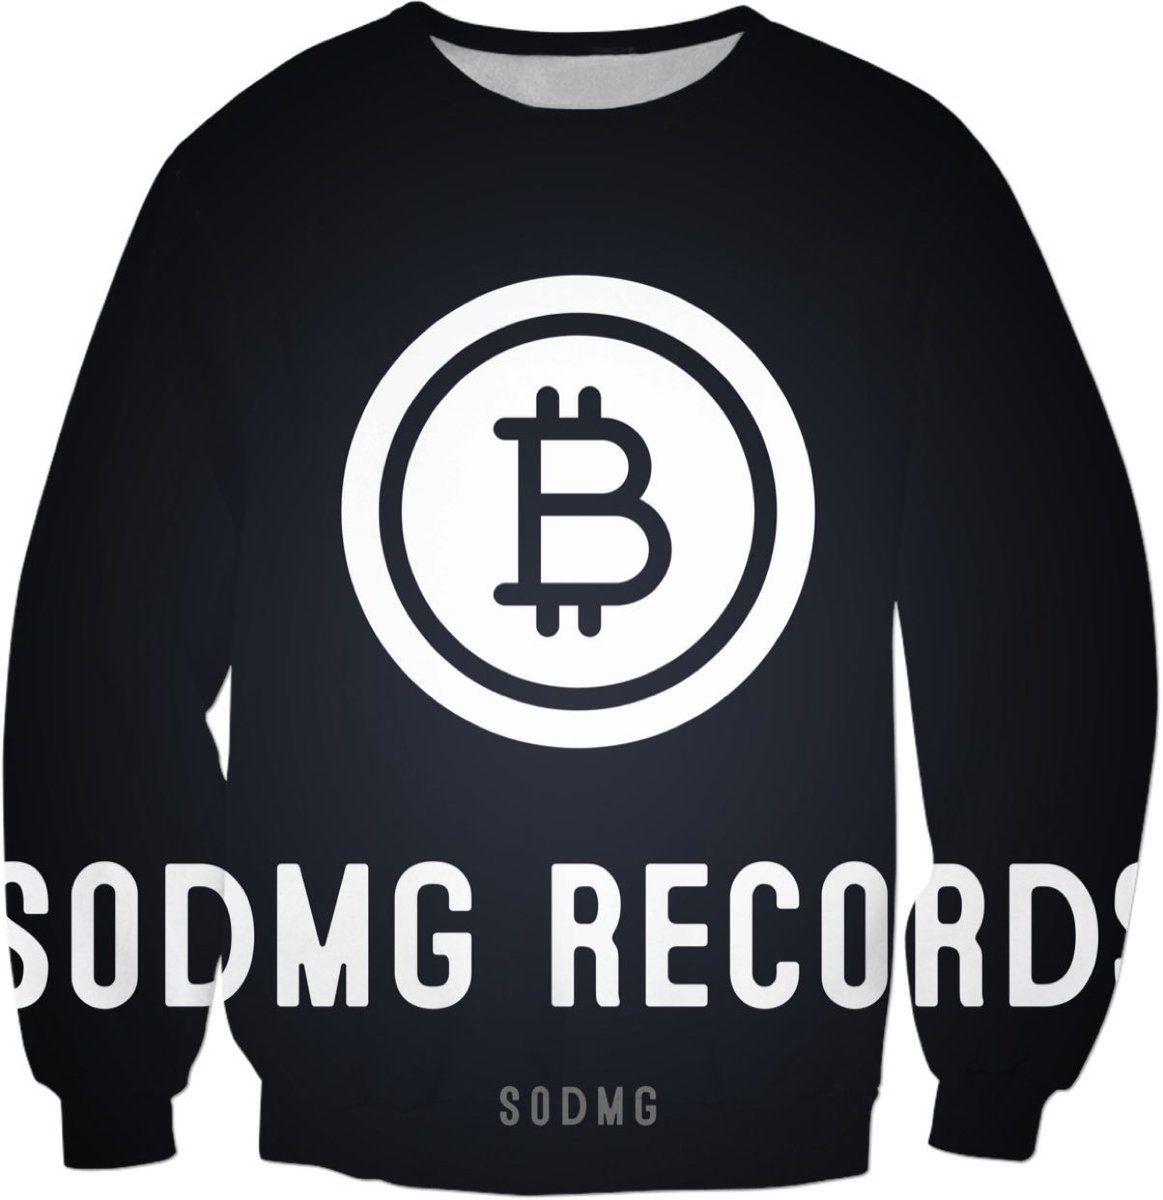 SODMG Logo - Soulja Boy (Drako)